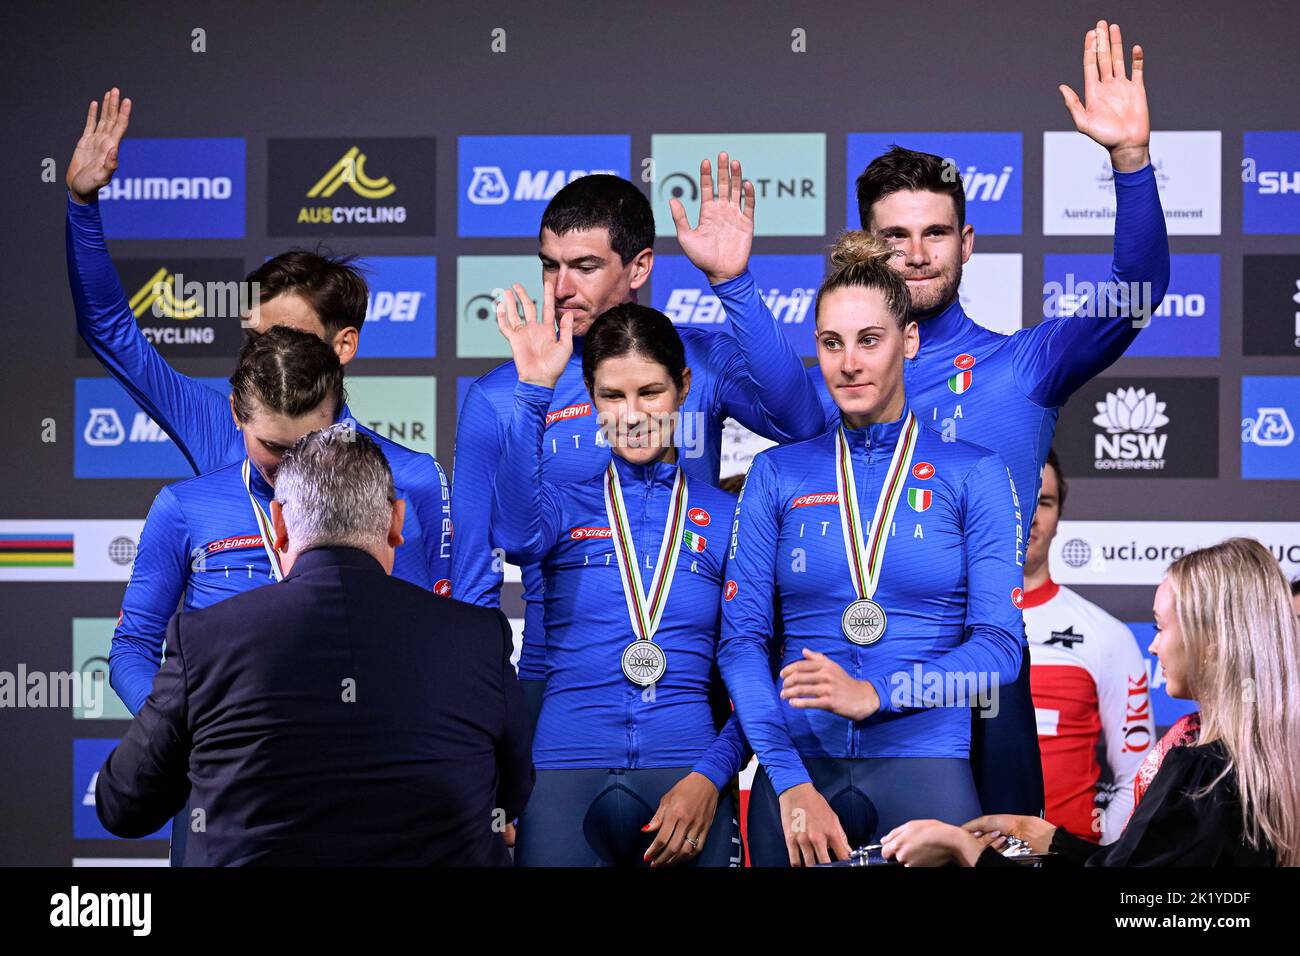 21st settembre 2022; Wollongong, Illawarra, Galles del Sud, Australia: UCI World Road Cycling Championships, secondi classificati l'Italia sul podio per la staffetta mista Team Time Trial Foto Stock